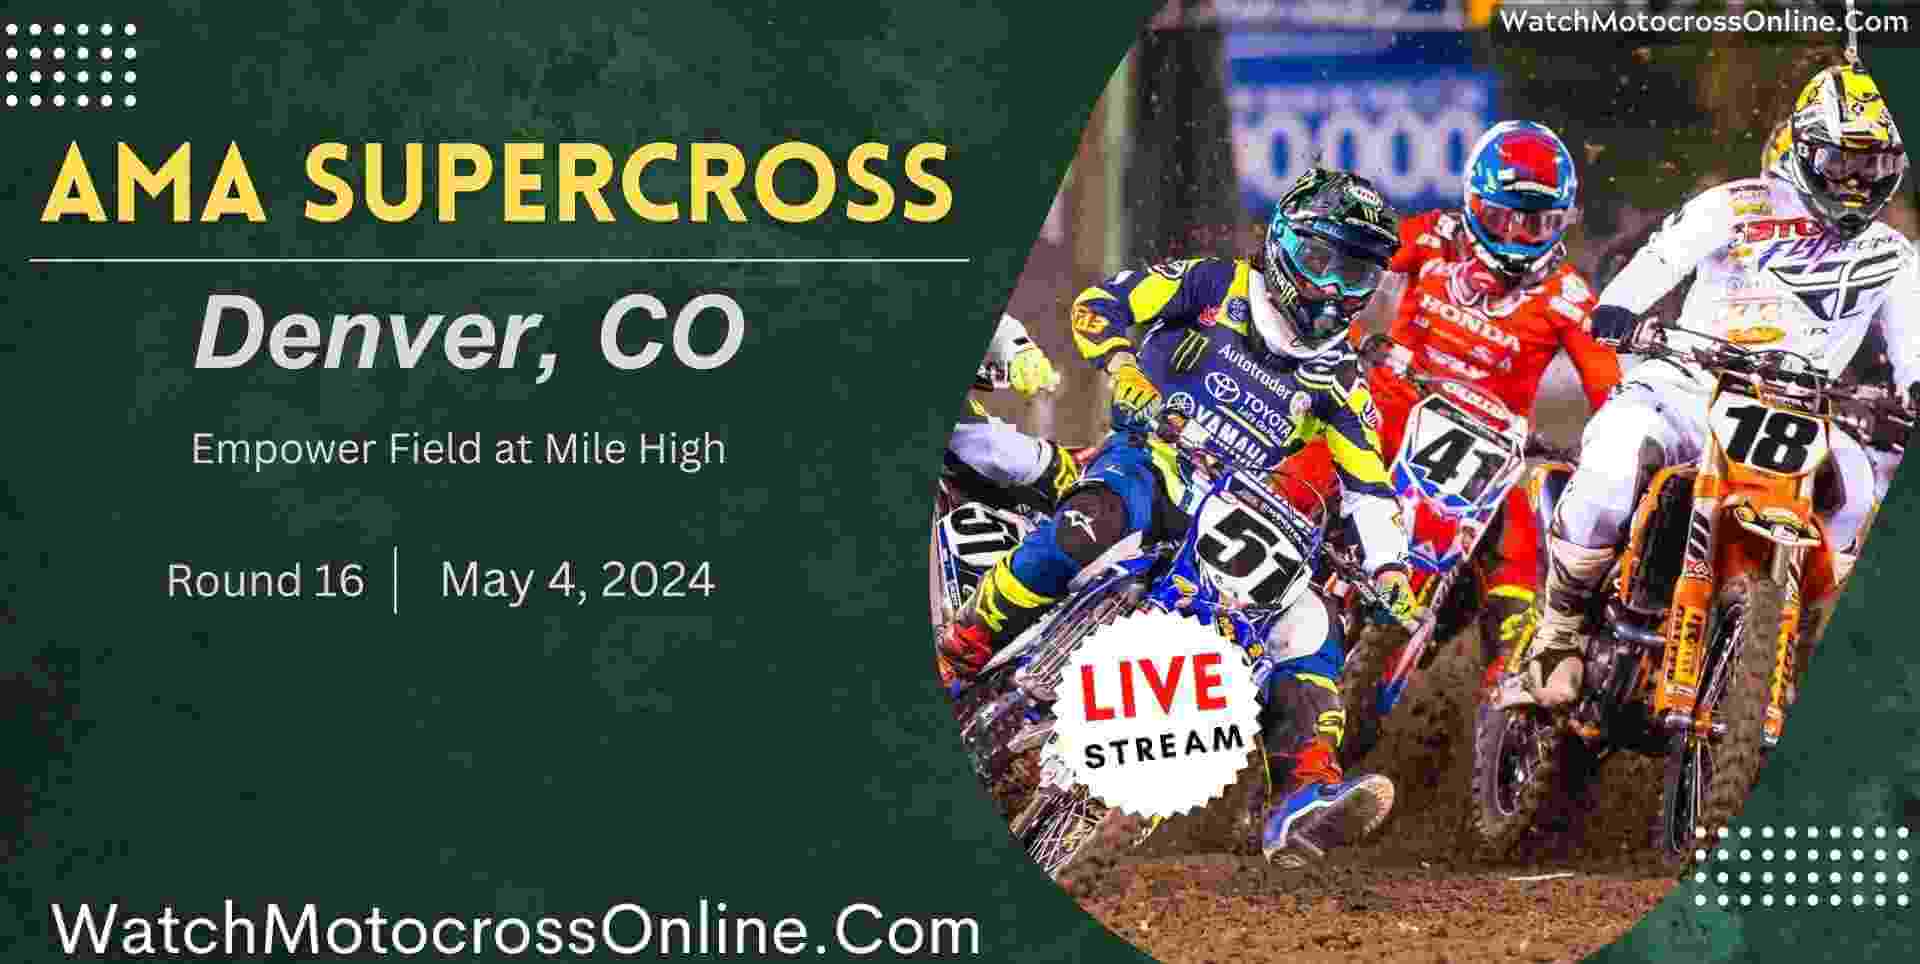 AMA Supercross Denver Live Stream 2024 Round 16 slider